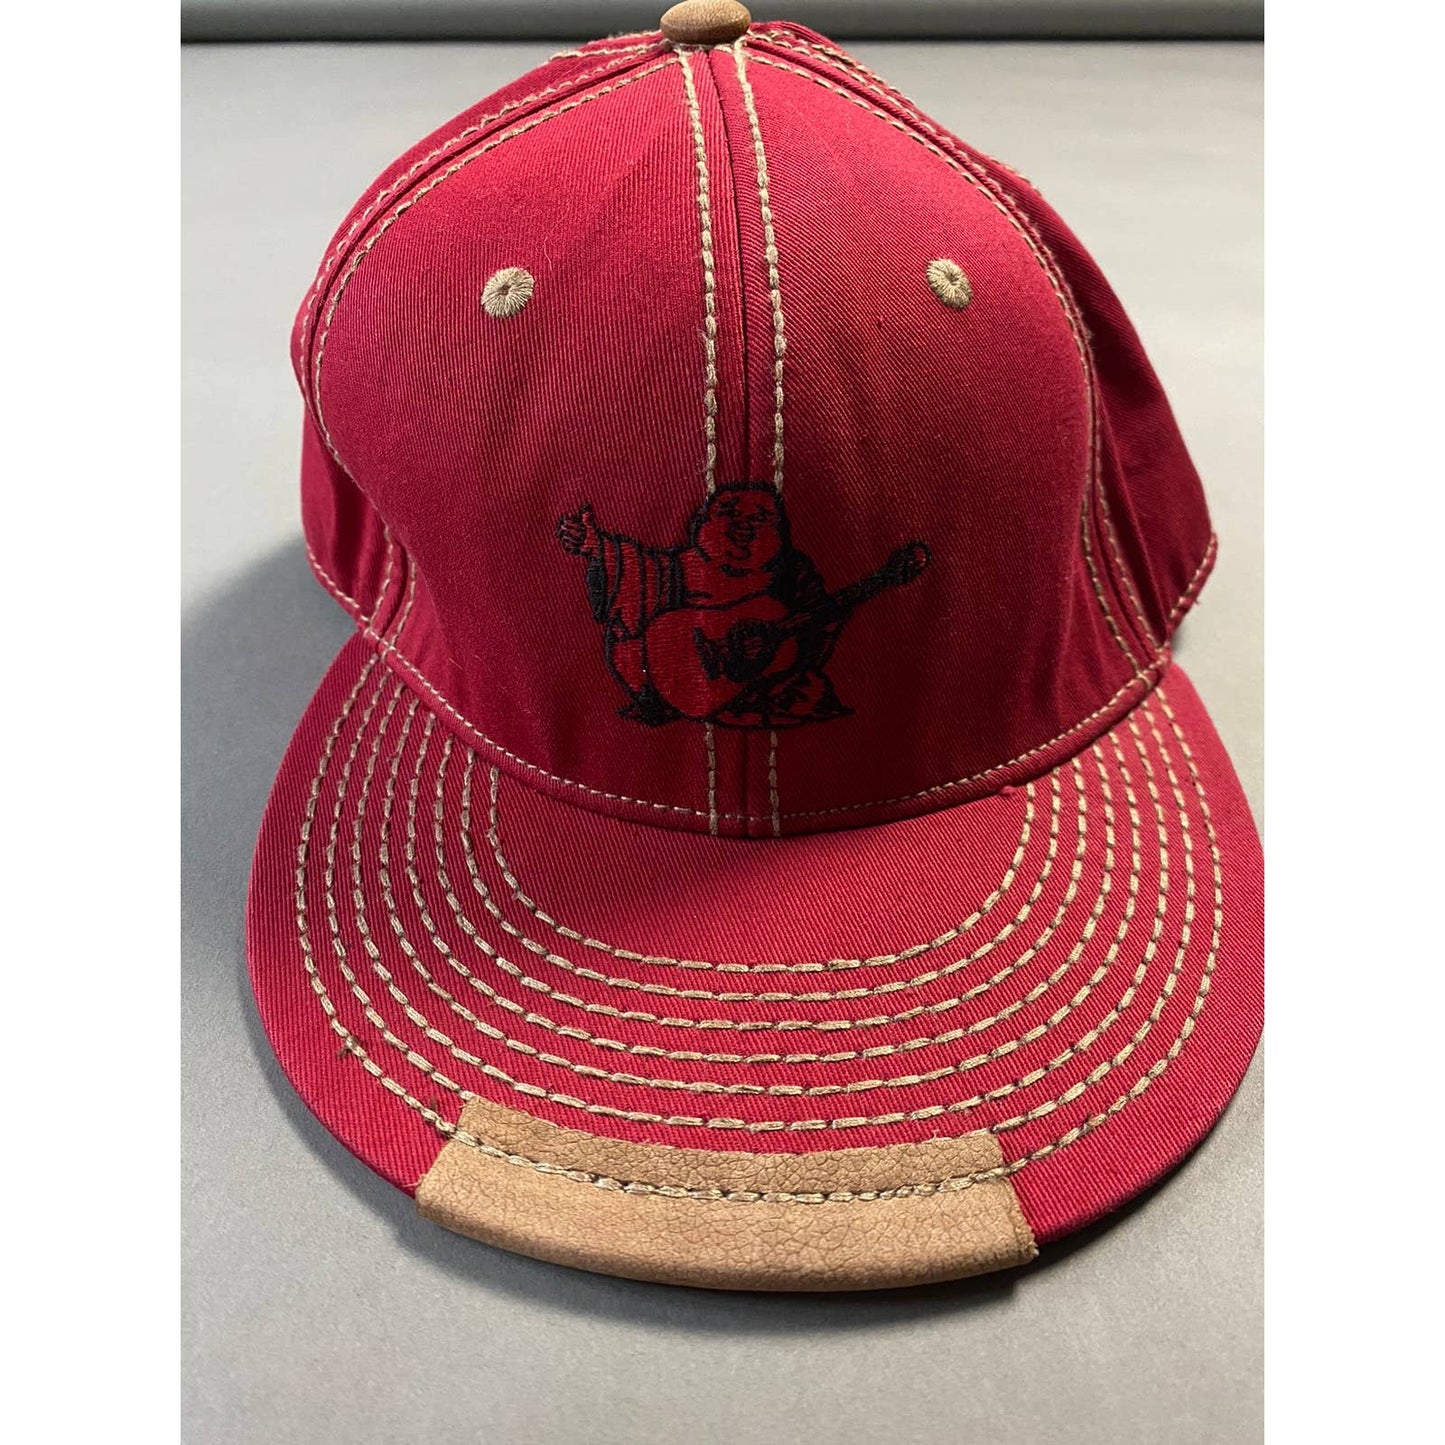 True Religion hat vintage red cap thick stitching